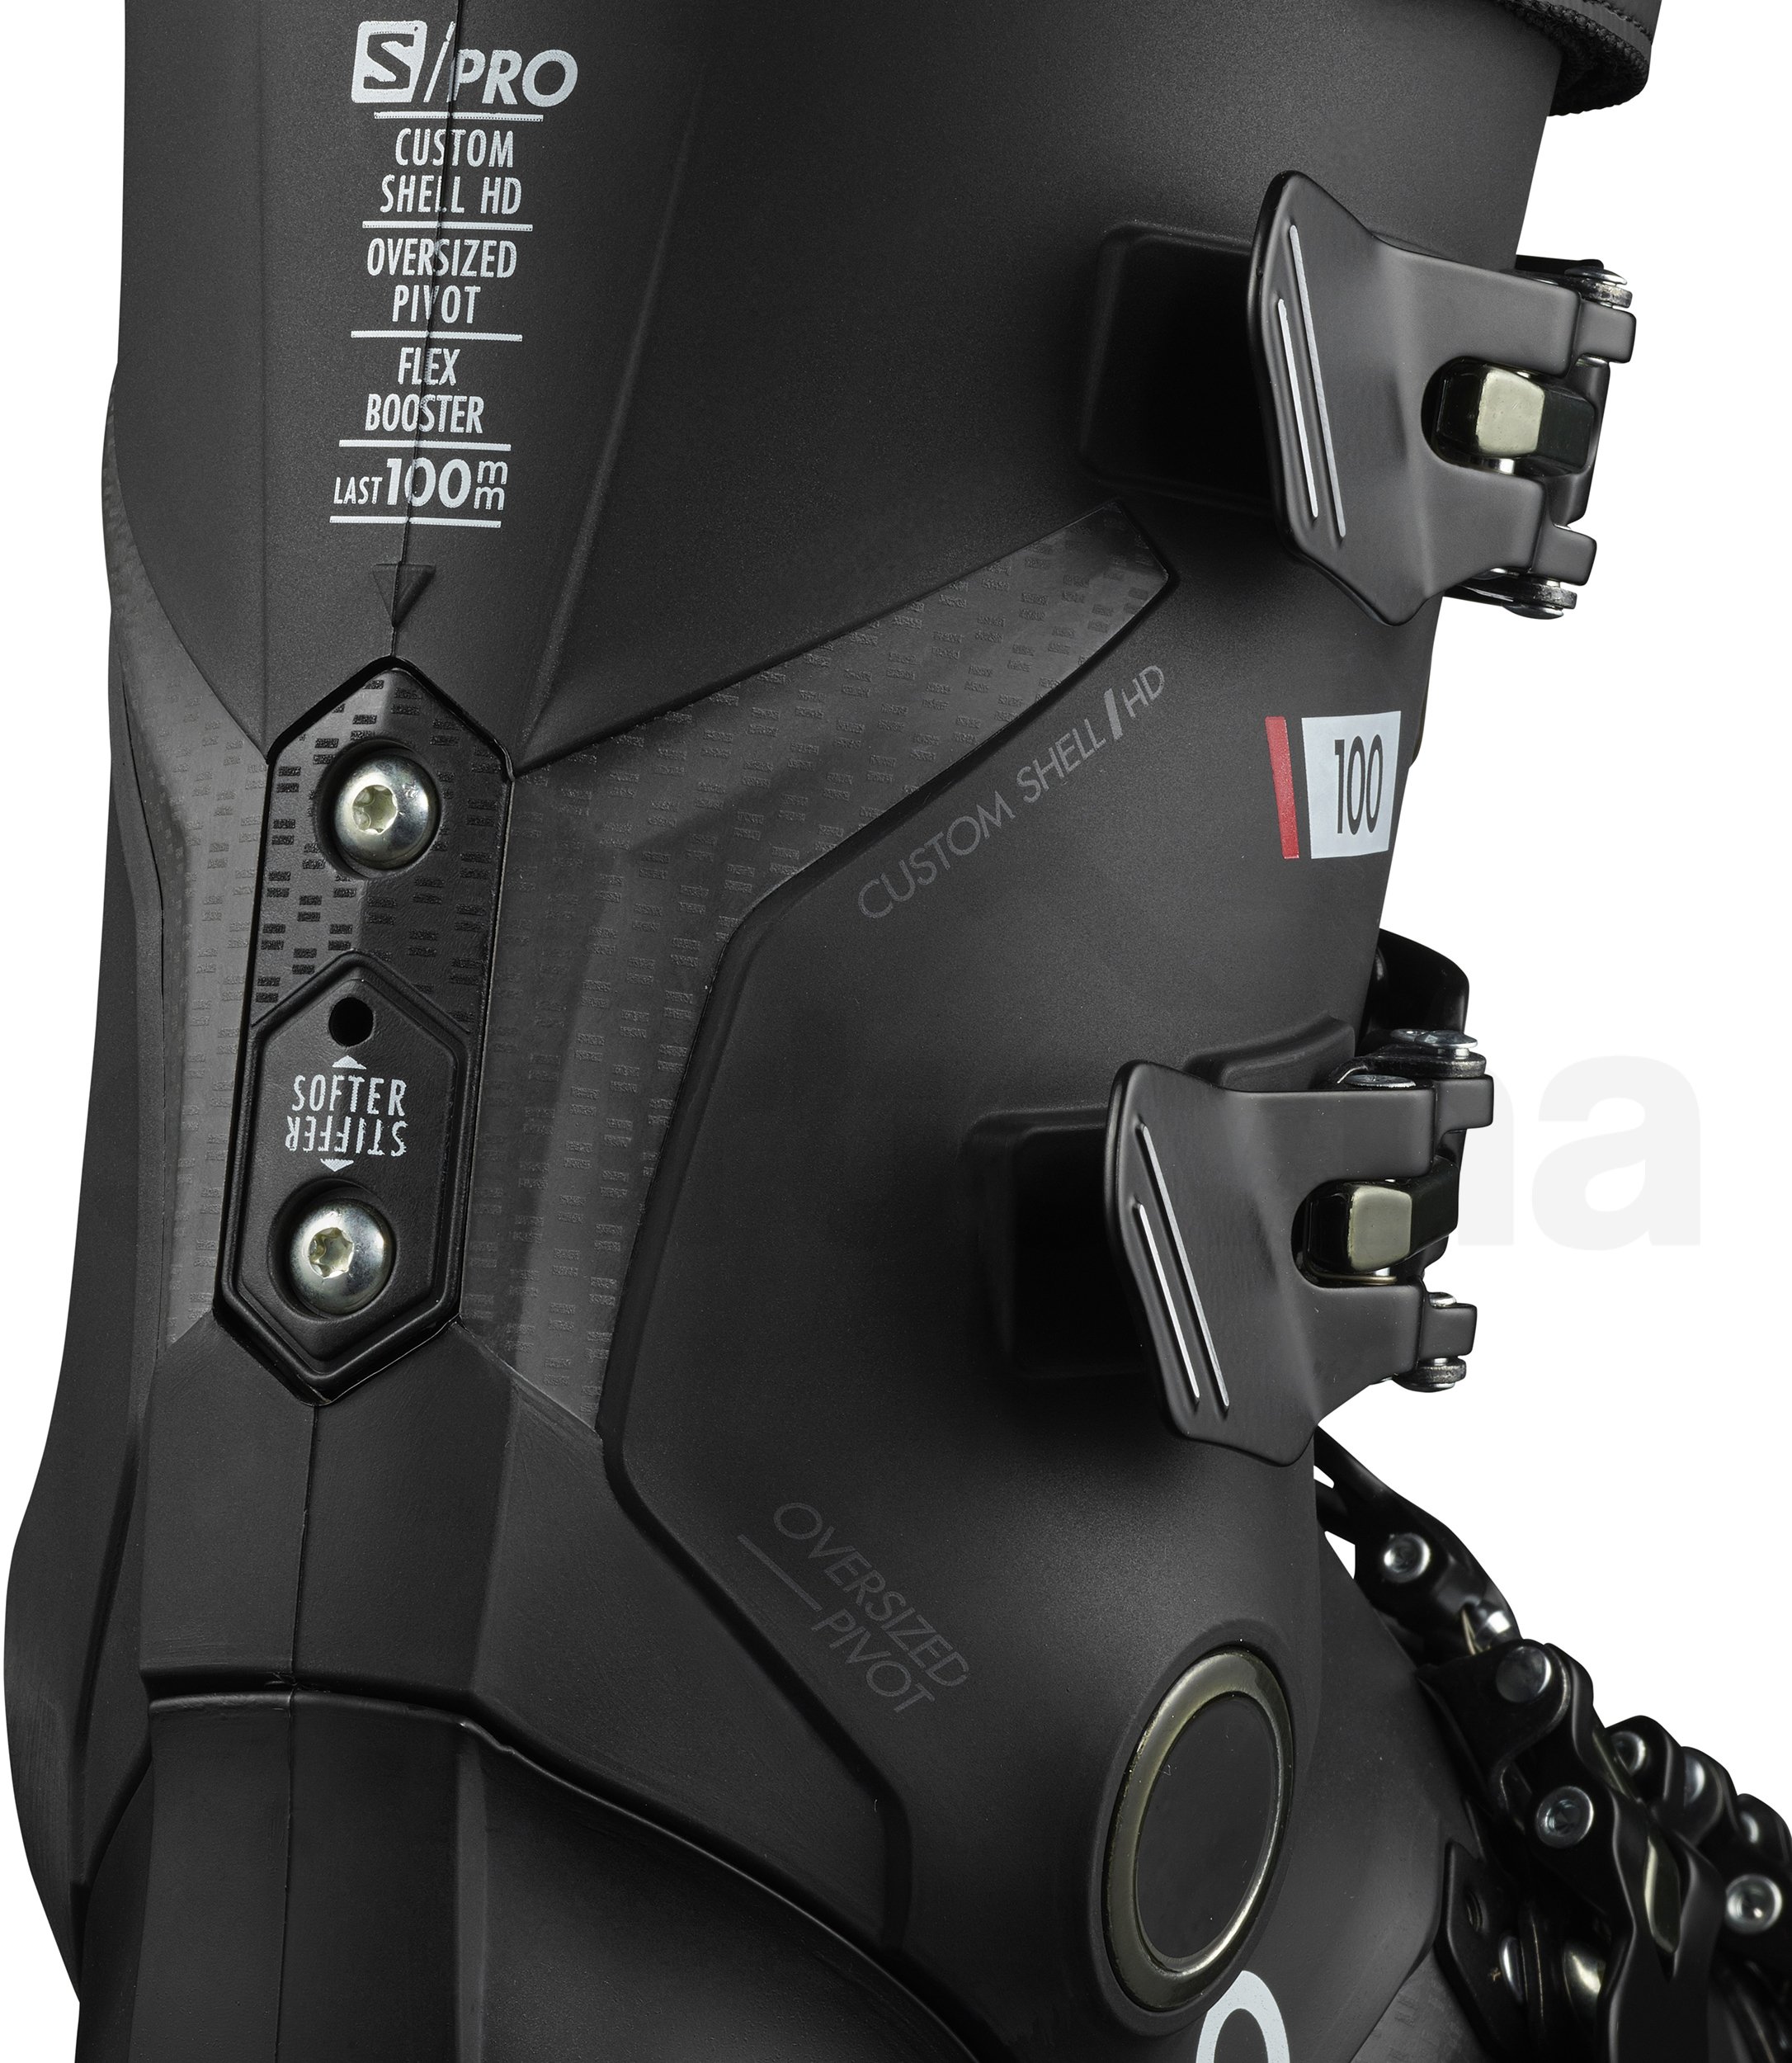 Lyžařské boty Salomon S/Pro 100 M - černá